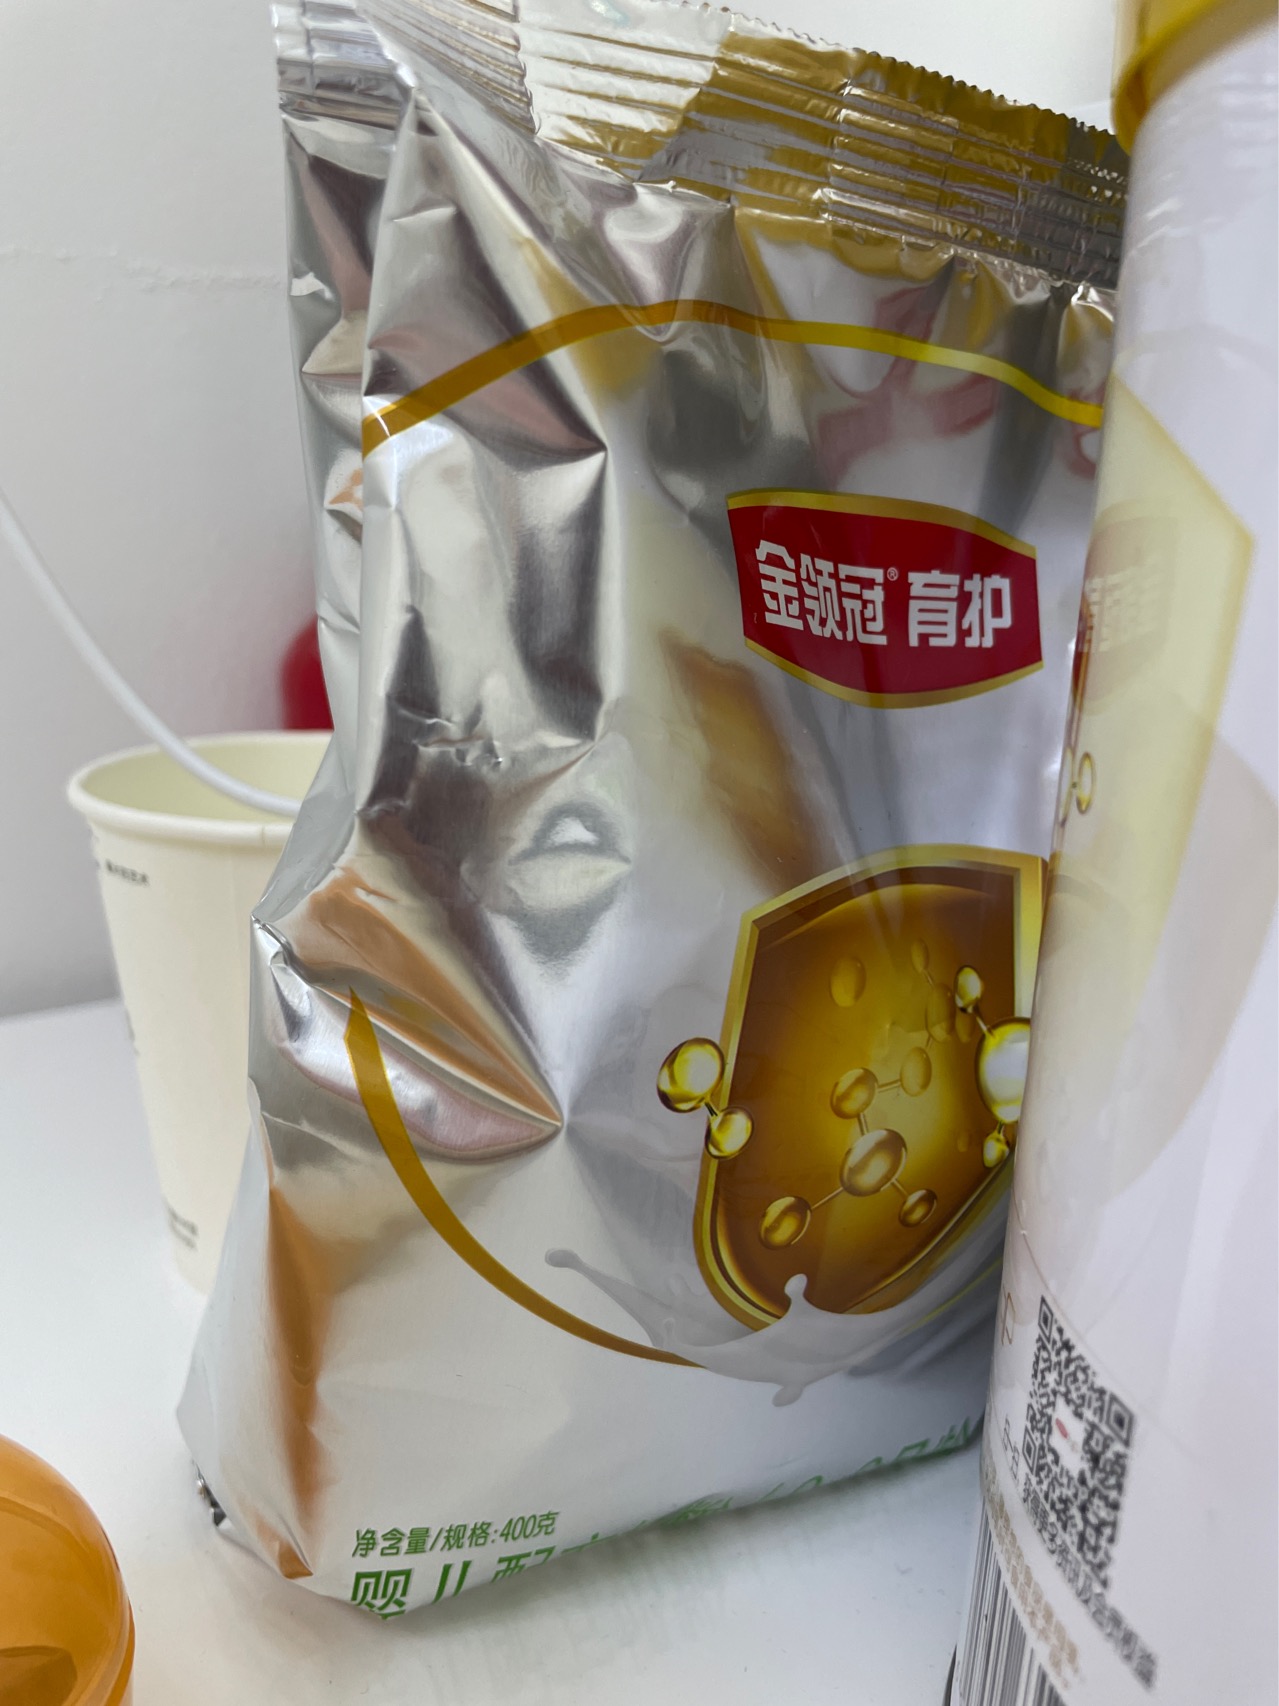 伊利(YILI)金领冠育护婴儿配方奶粉 1段(0-6个月适用) 400g盒装(新旧包装随机发货)晒单图